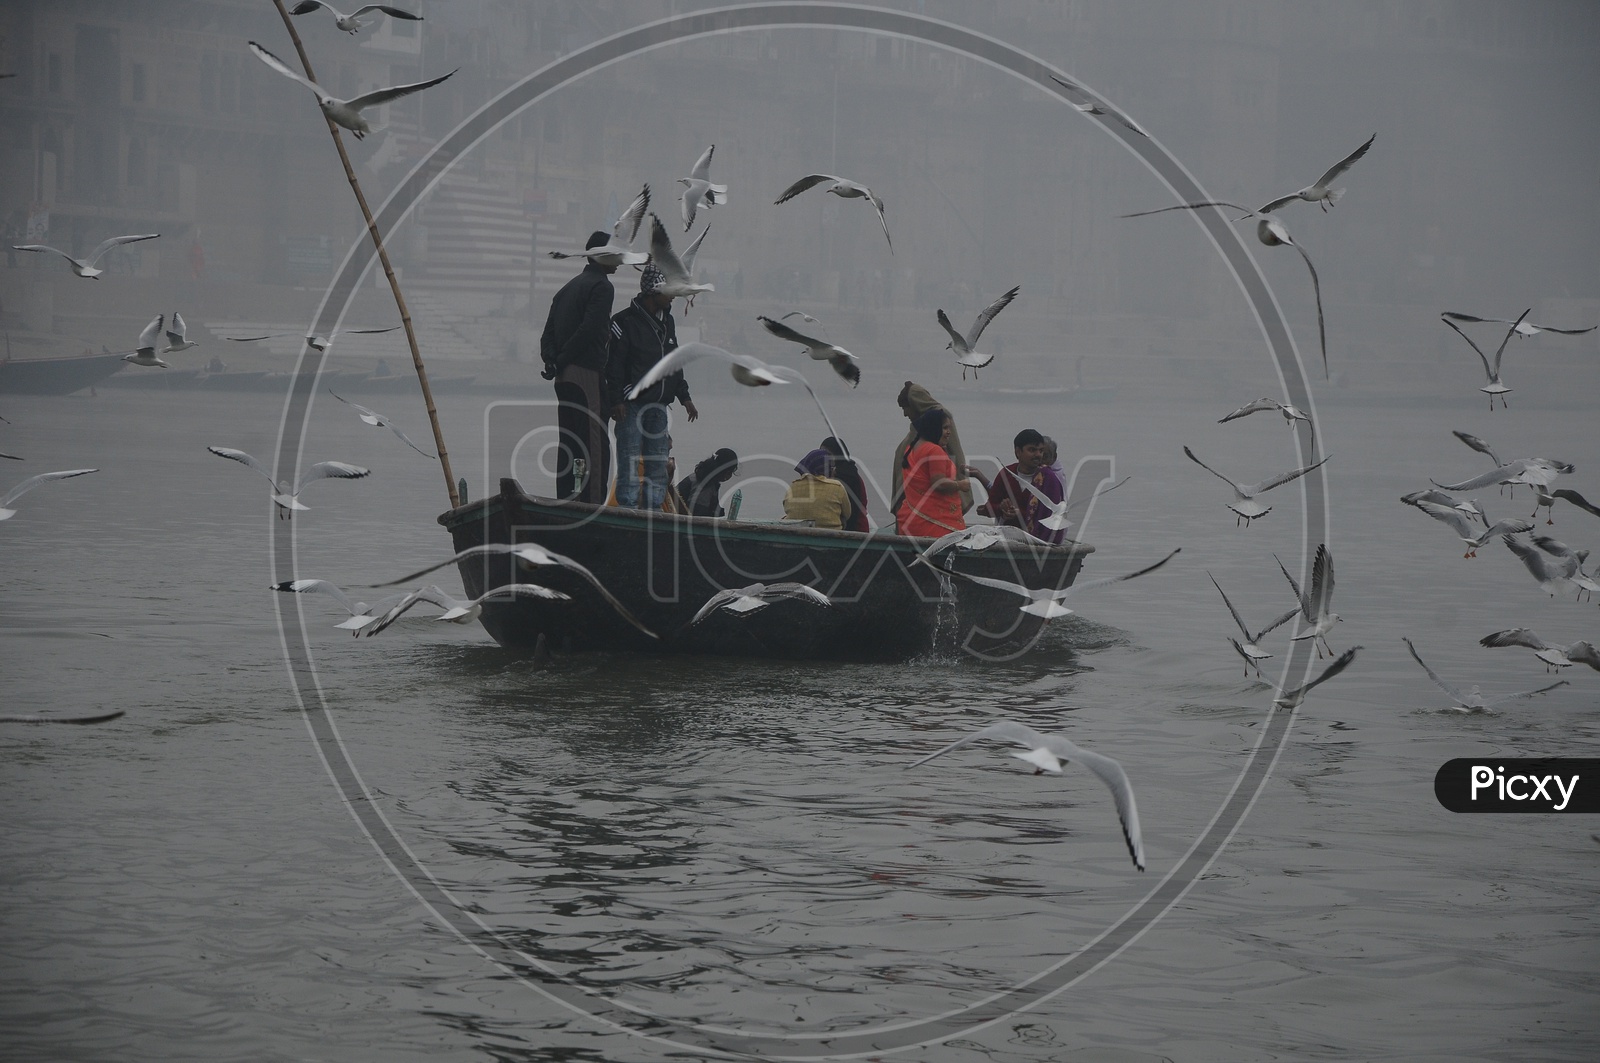 Pilgrims Enjoying The Morning Boat Rides on River Ganga in Varanasi With Migratory Birds